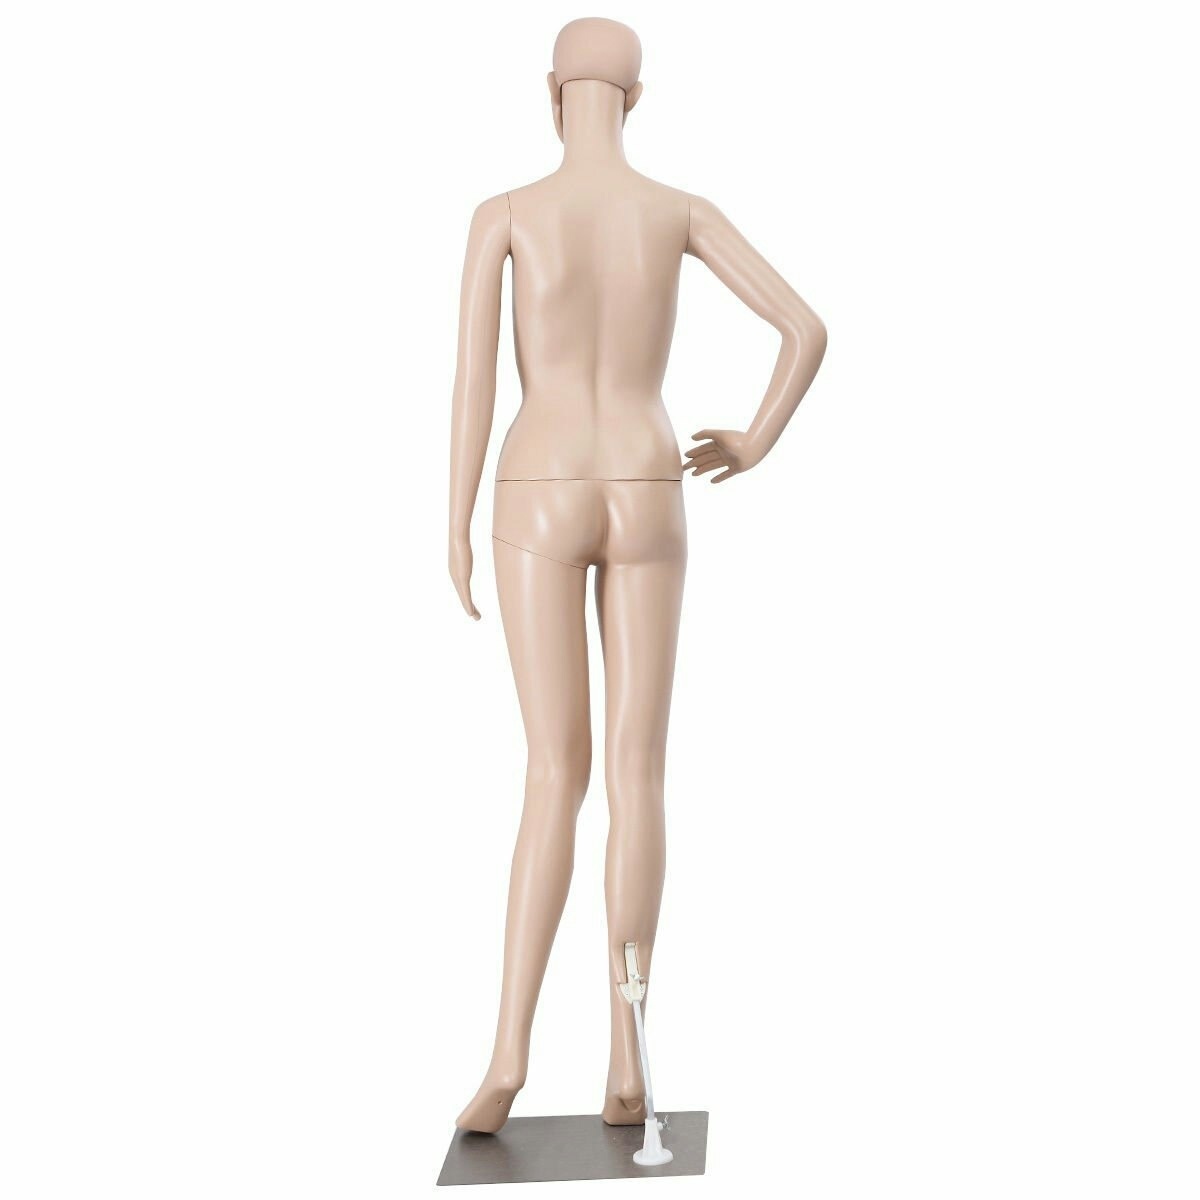 Эротический манекен, Hot Mannequin Hm, - купить в СексФист